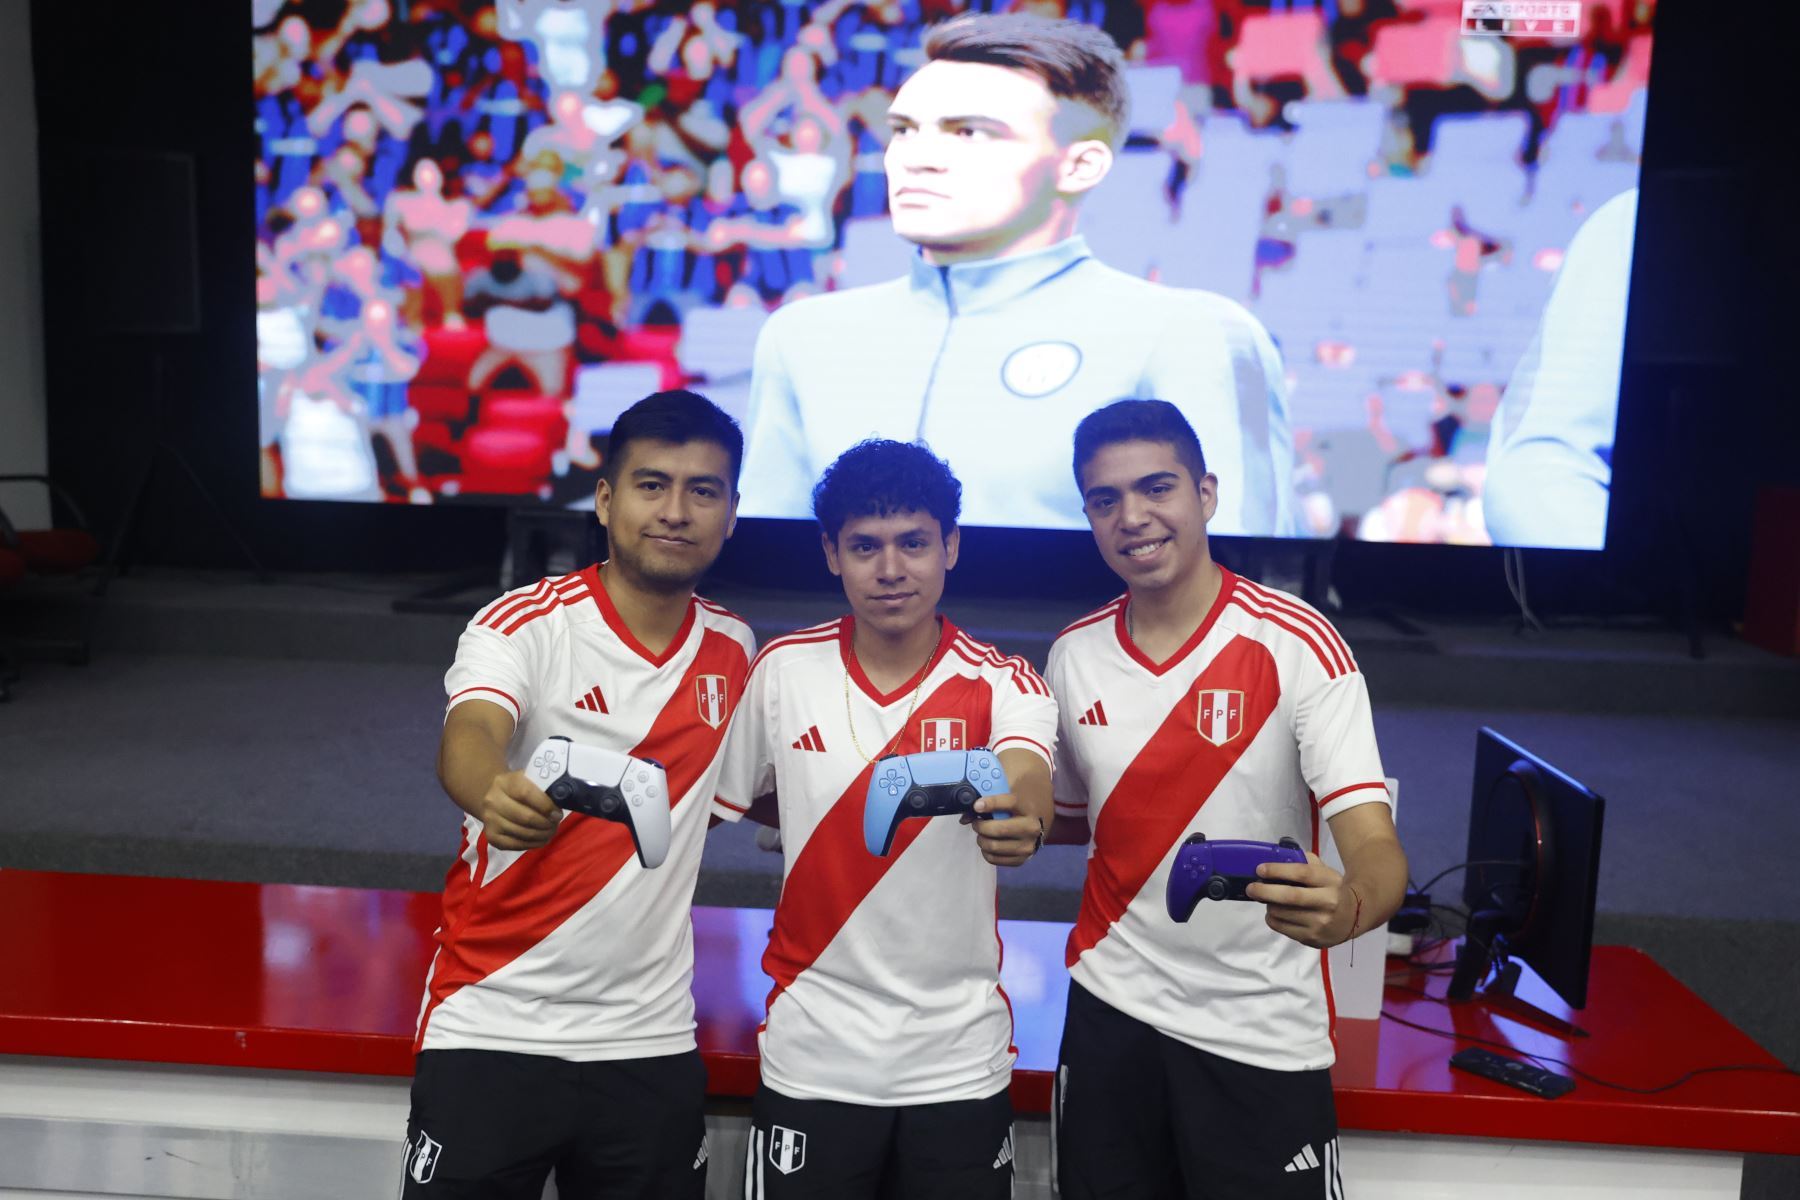 Seleccionados de la ebicolor participaron en torneo amistoso antes de viajar para representar al Perú en la FIFAe Nations Cup 2023